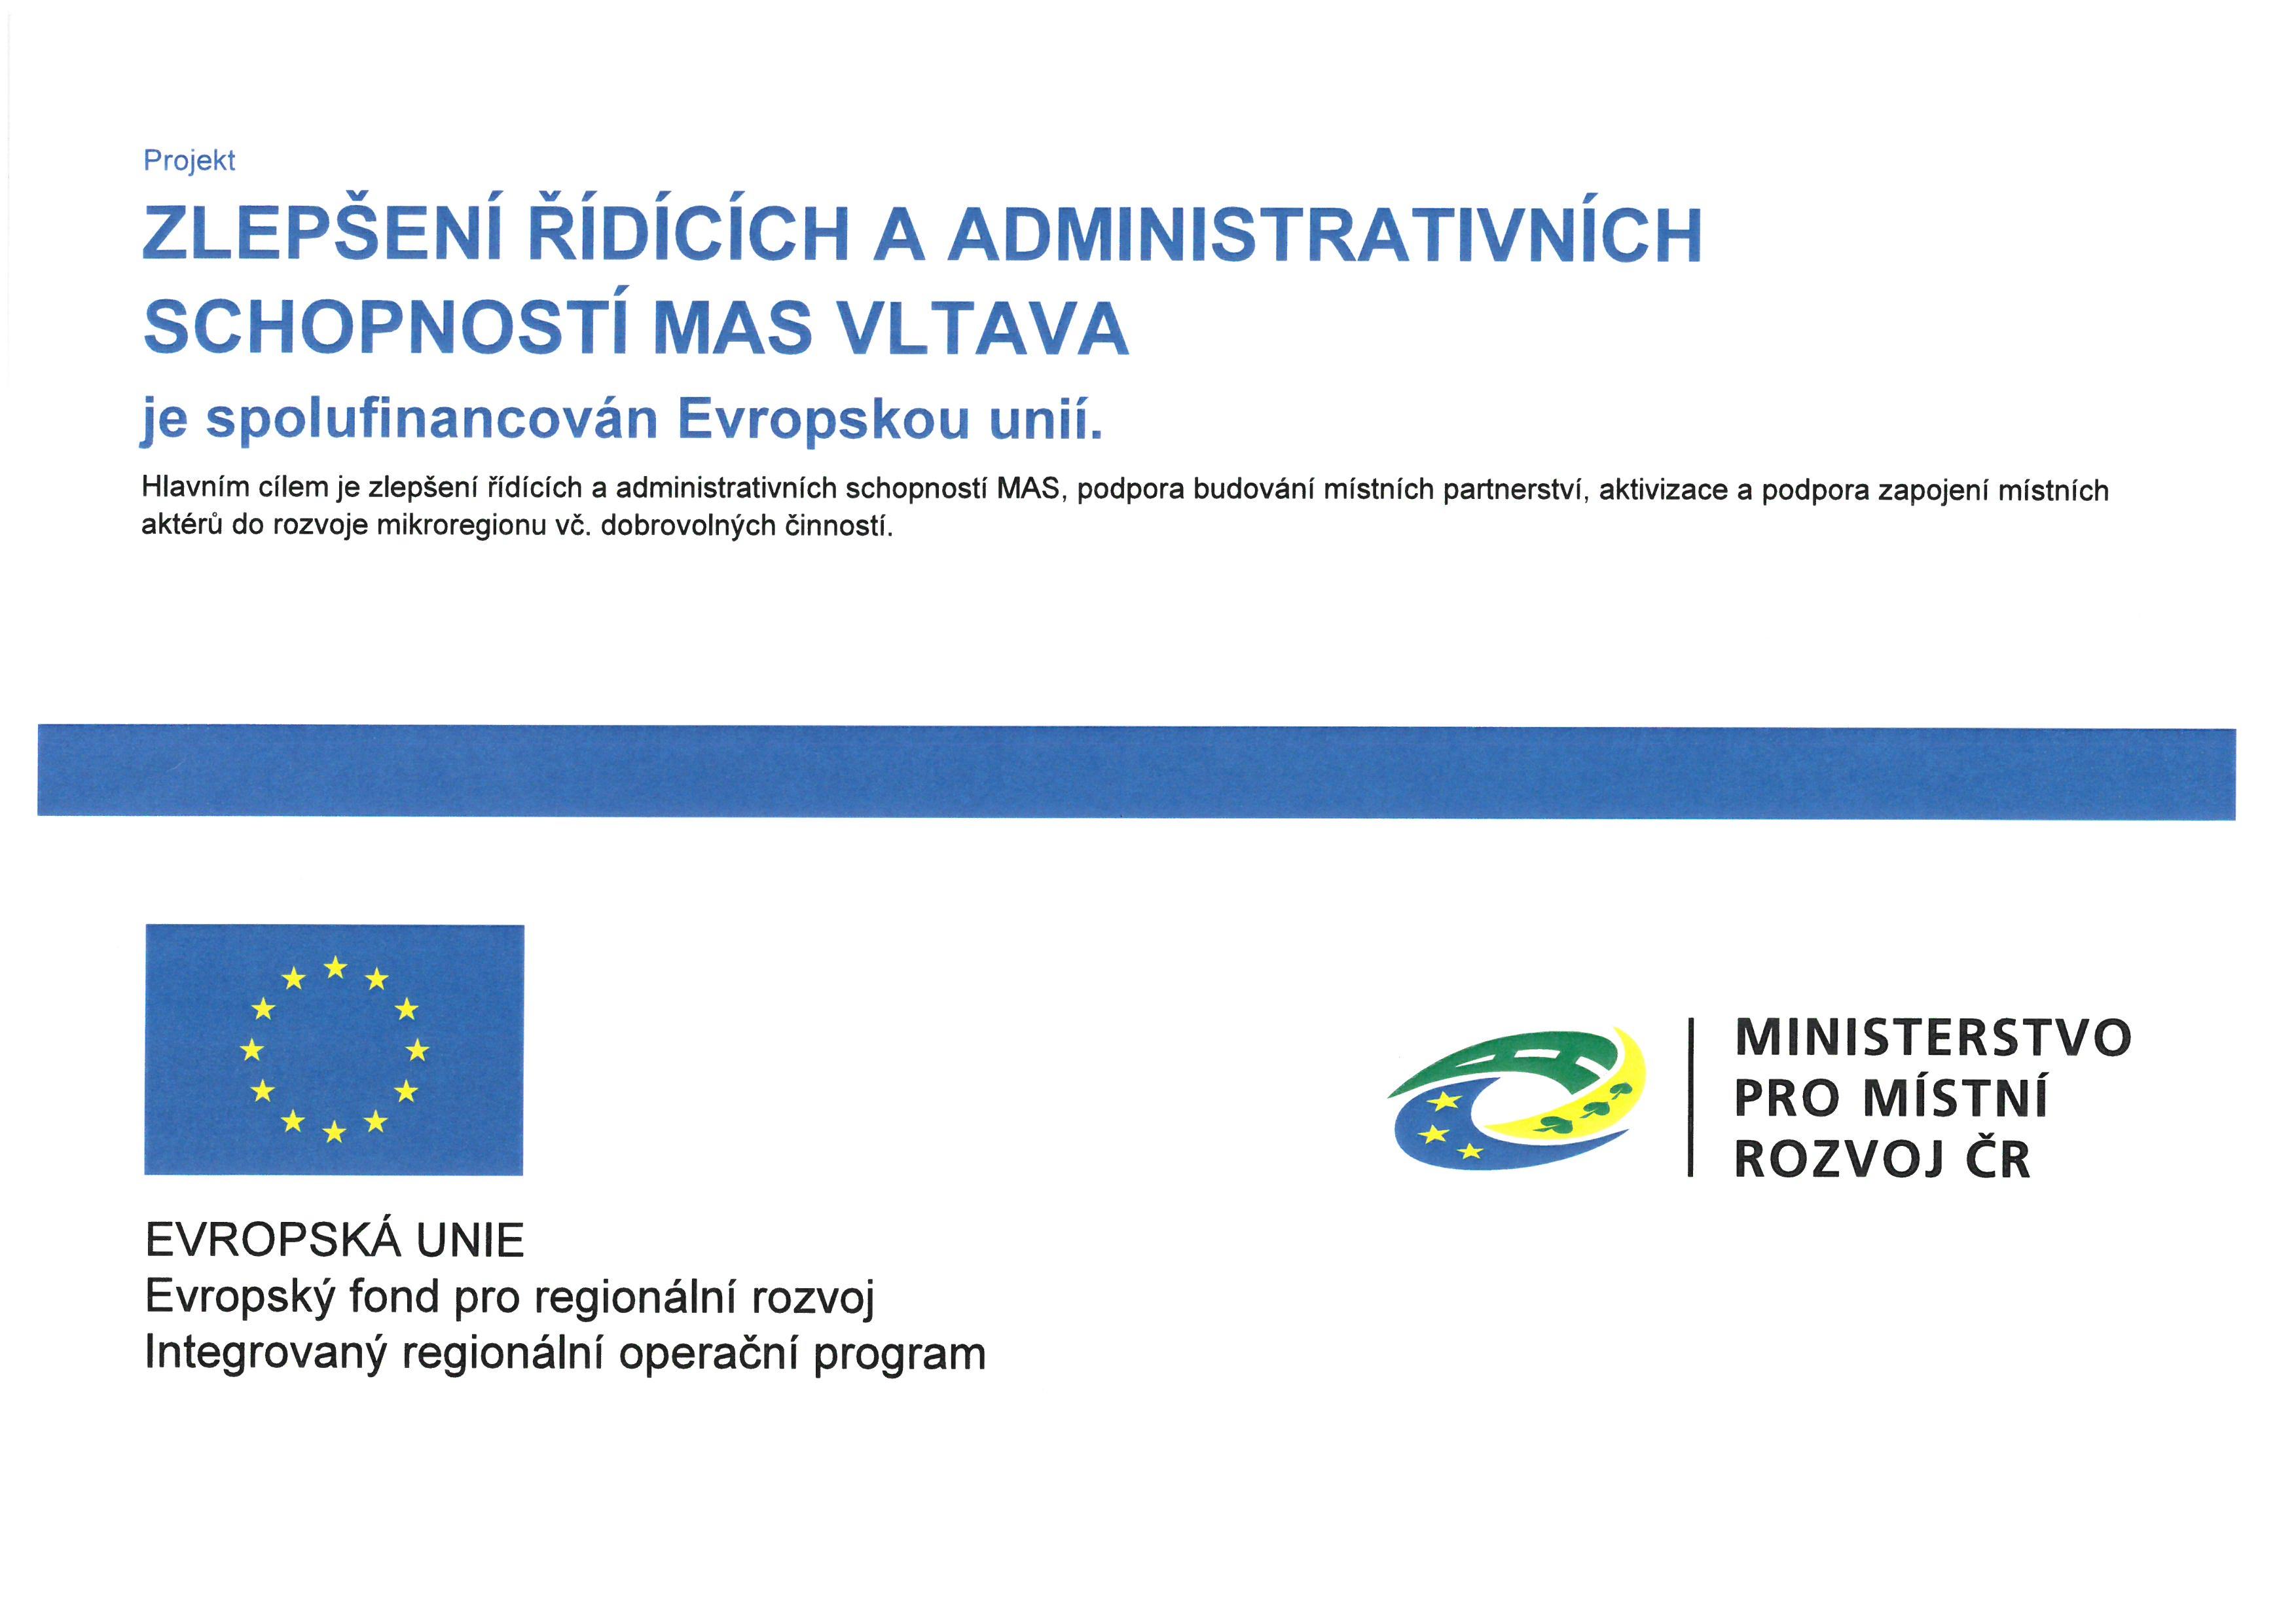 Zlepšení řídících a administrativních schopností MAS Vltava